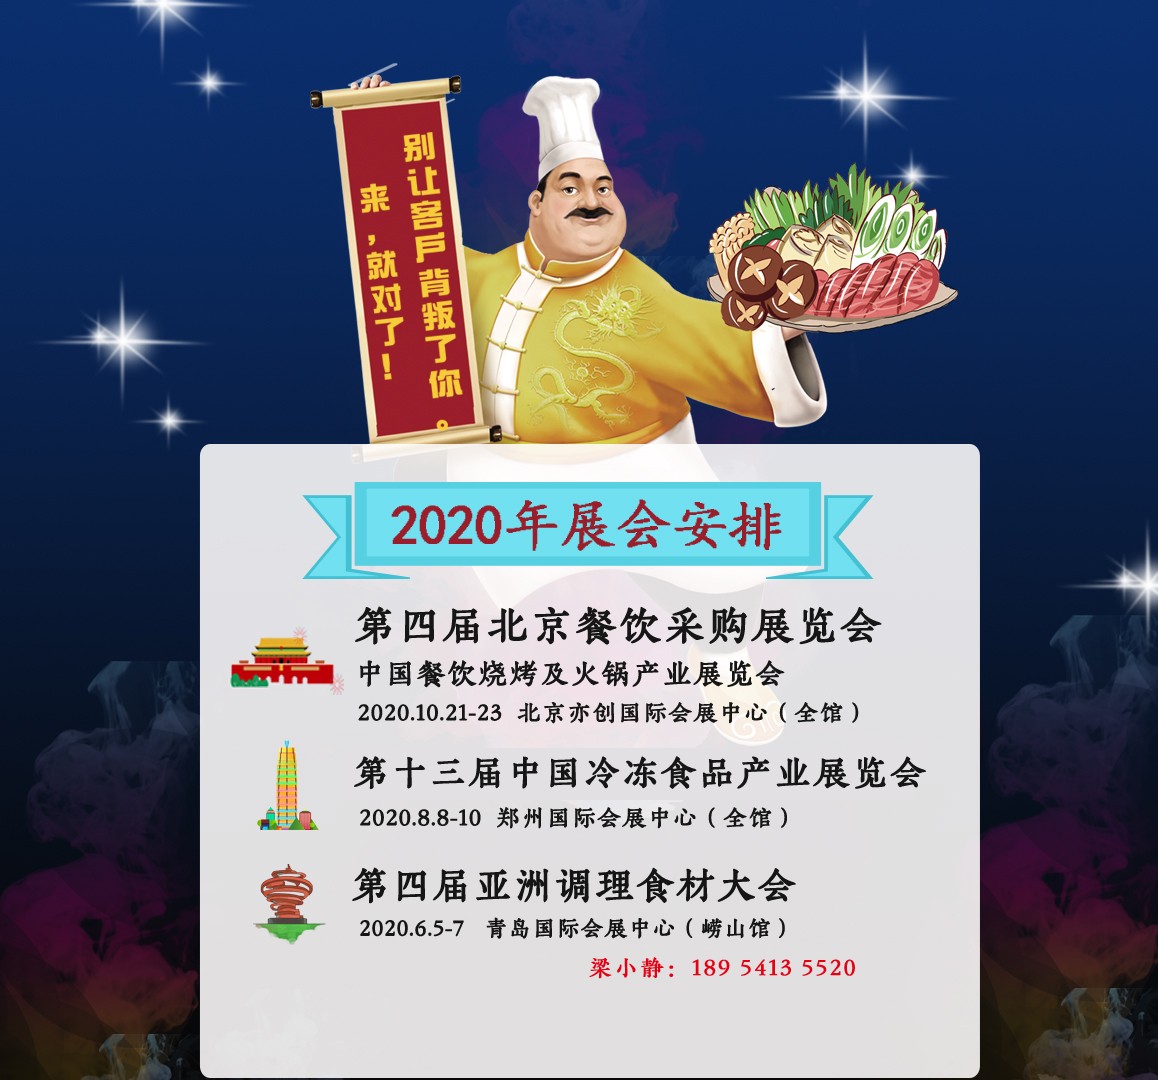 2020中国北京餐饮烧烤及火锅产业展览会